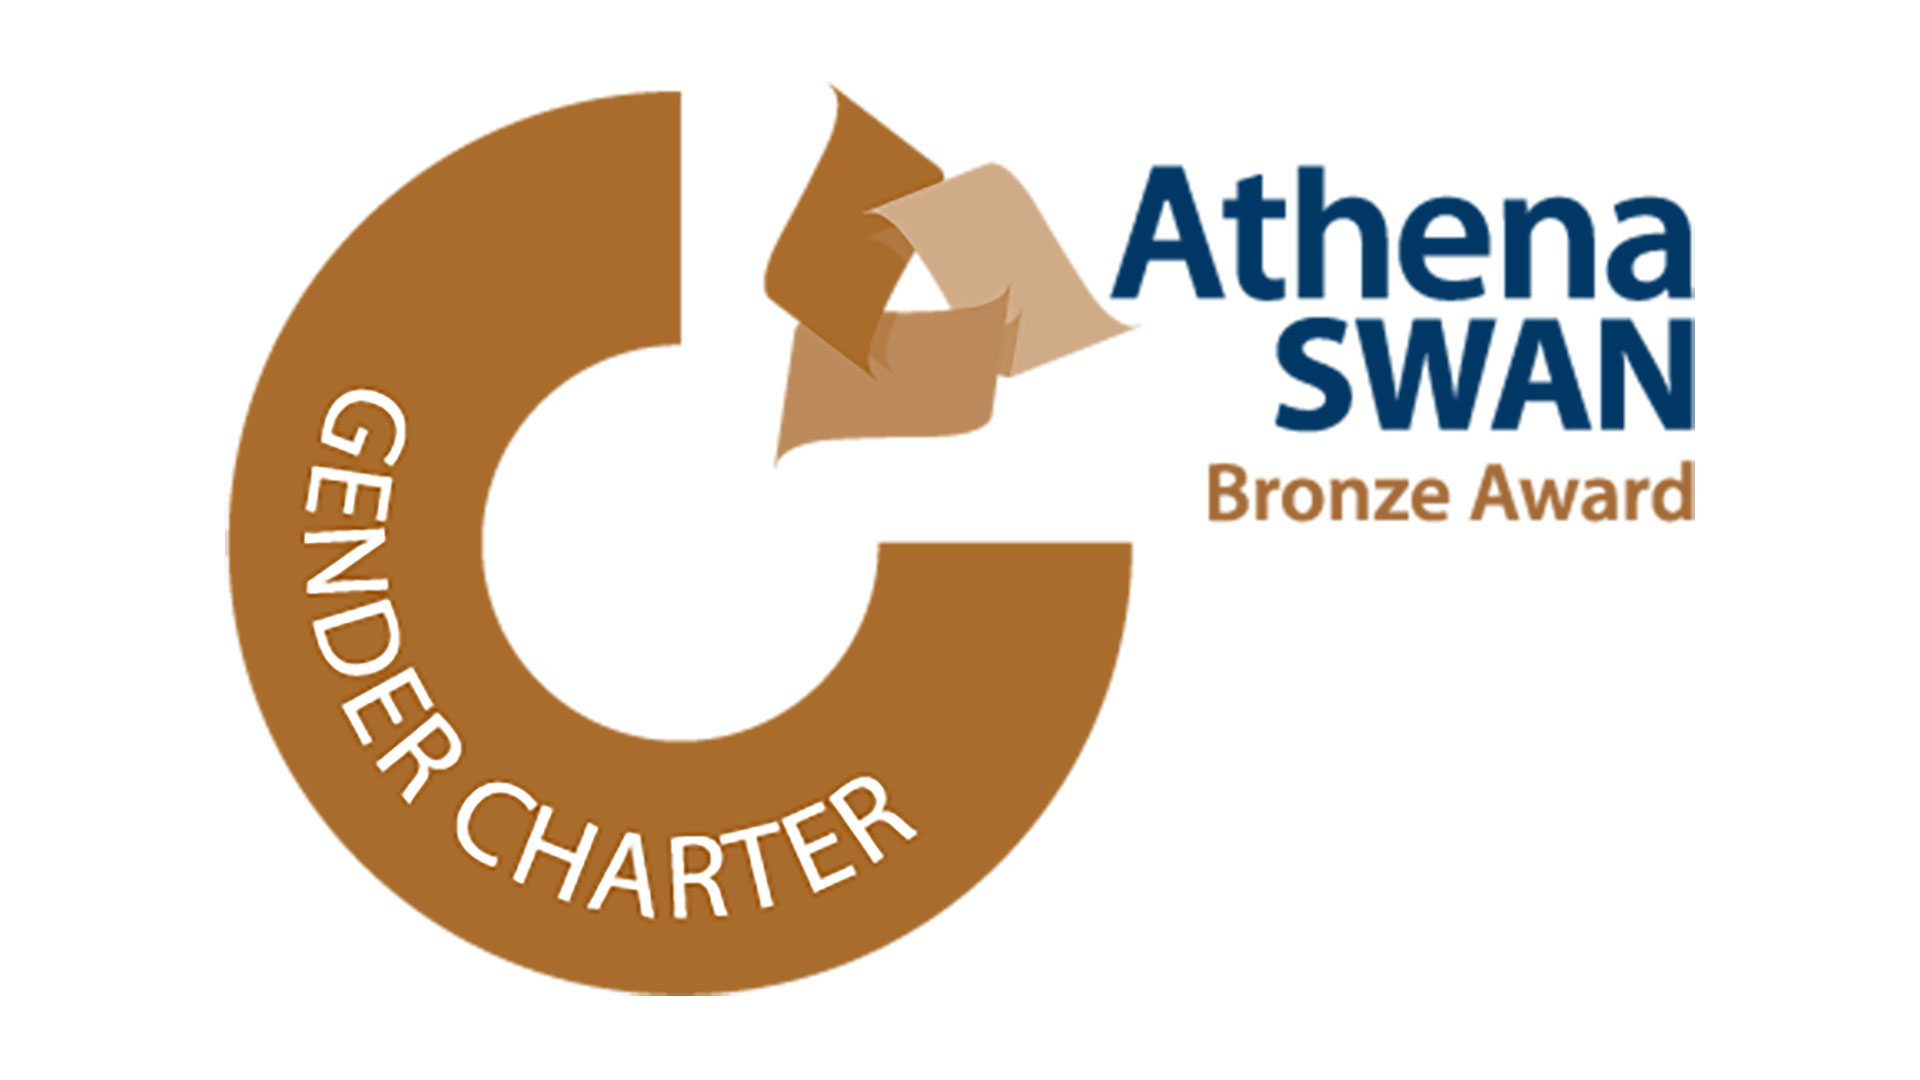 Athena SWAN Bronze Award for Gender Equality